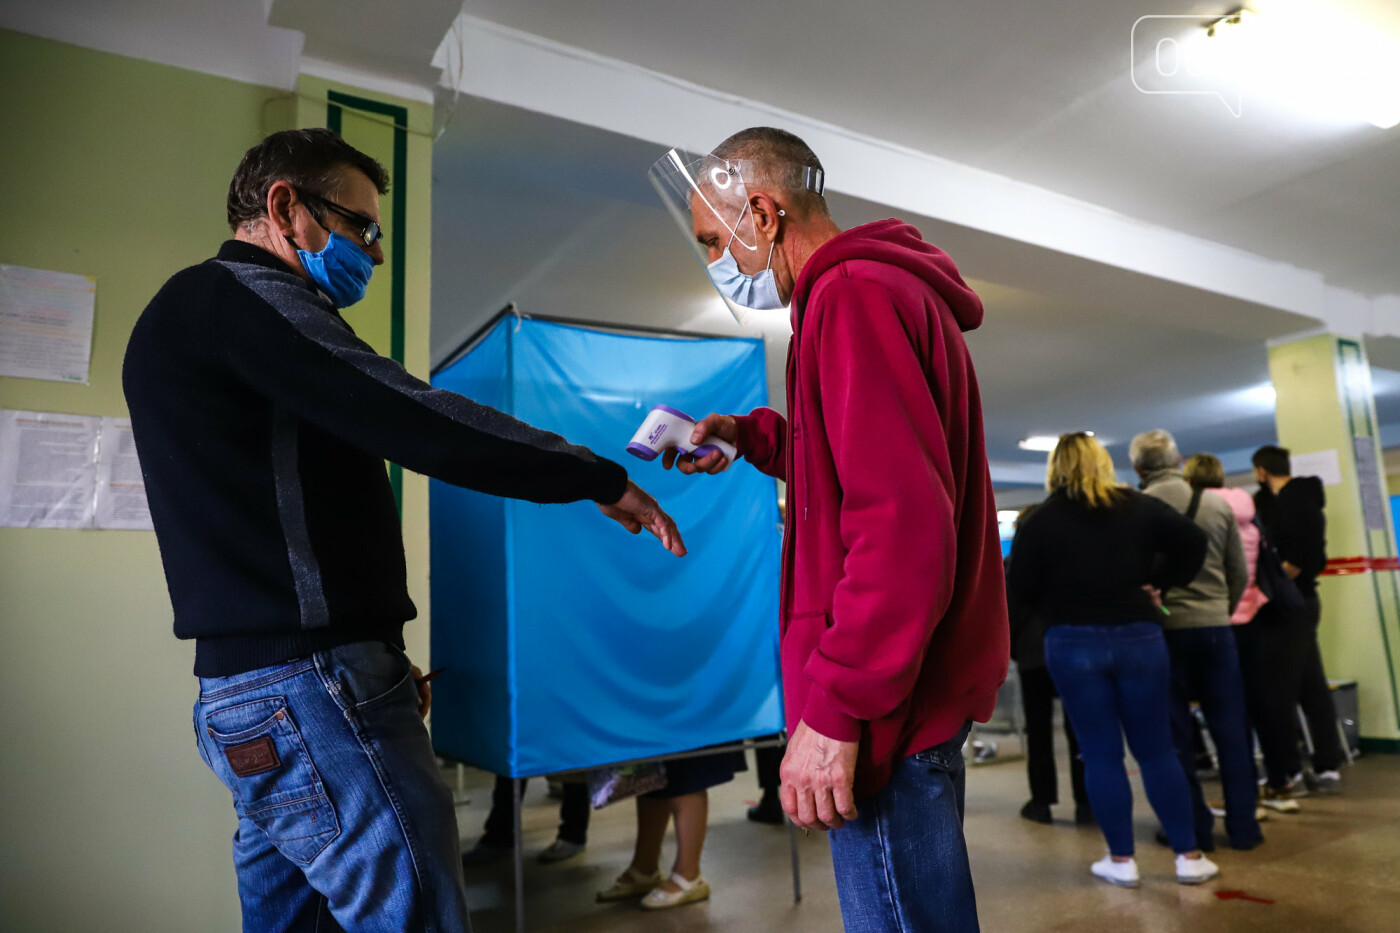 Местные выборы в Запорожье